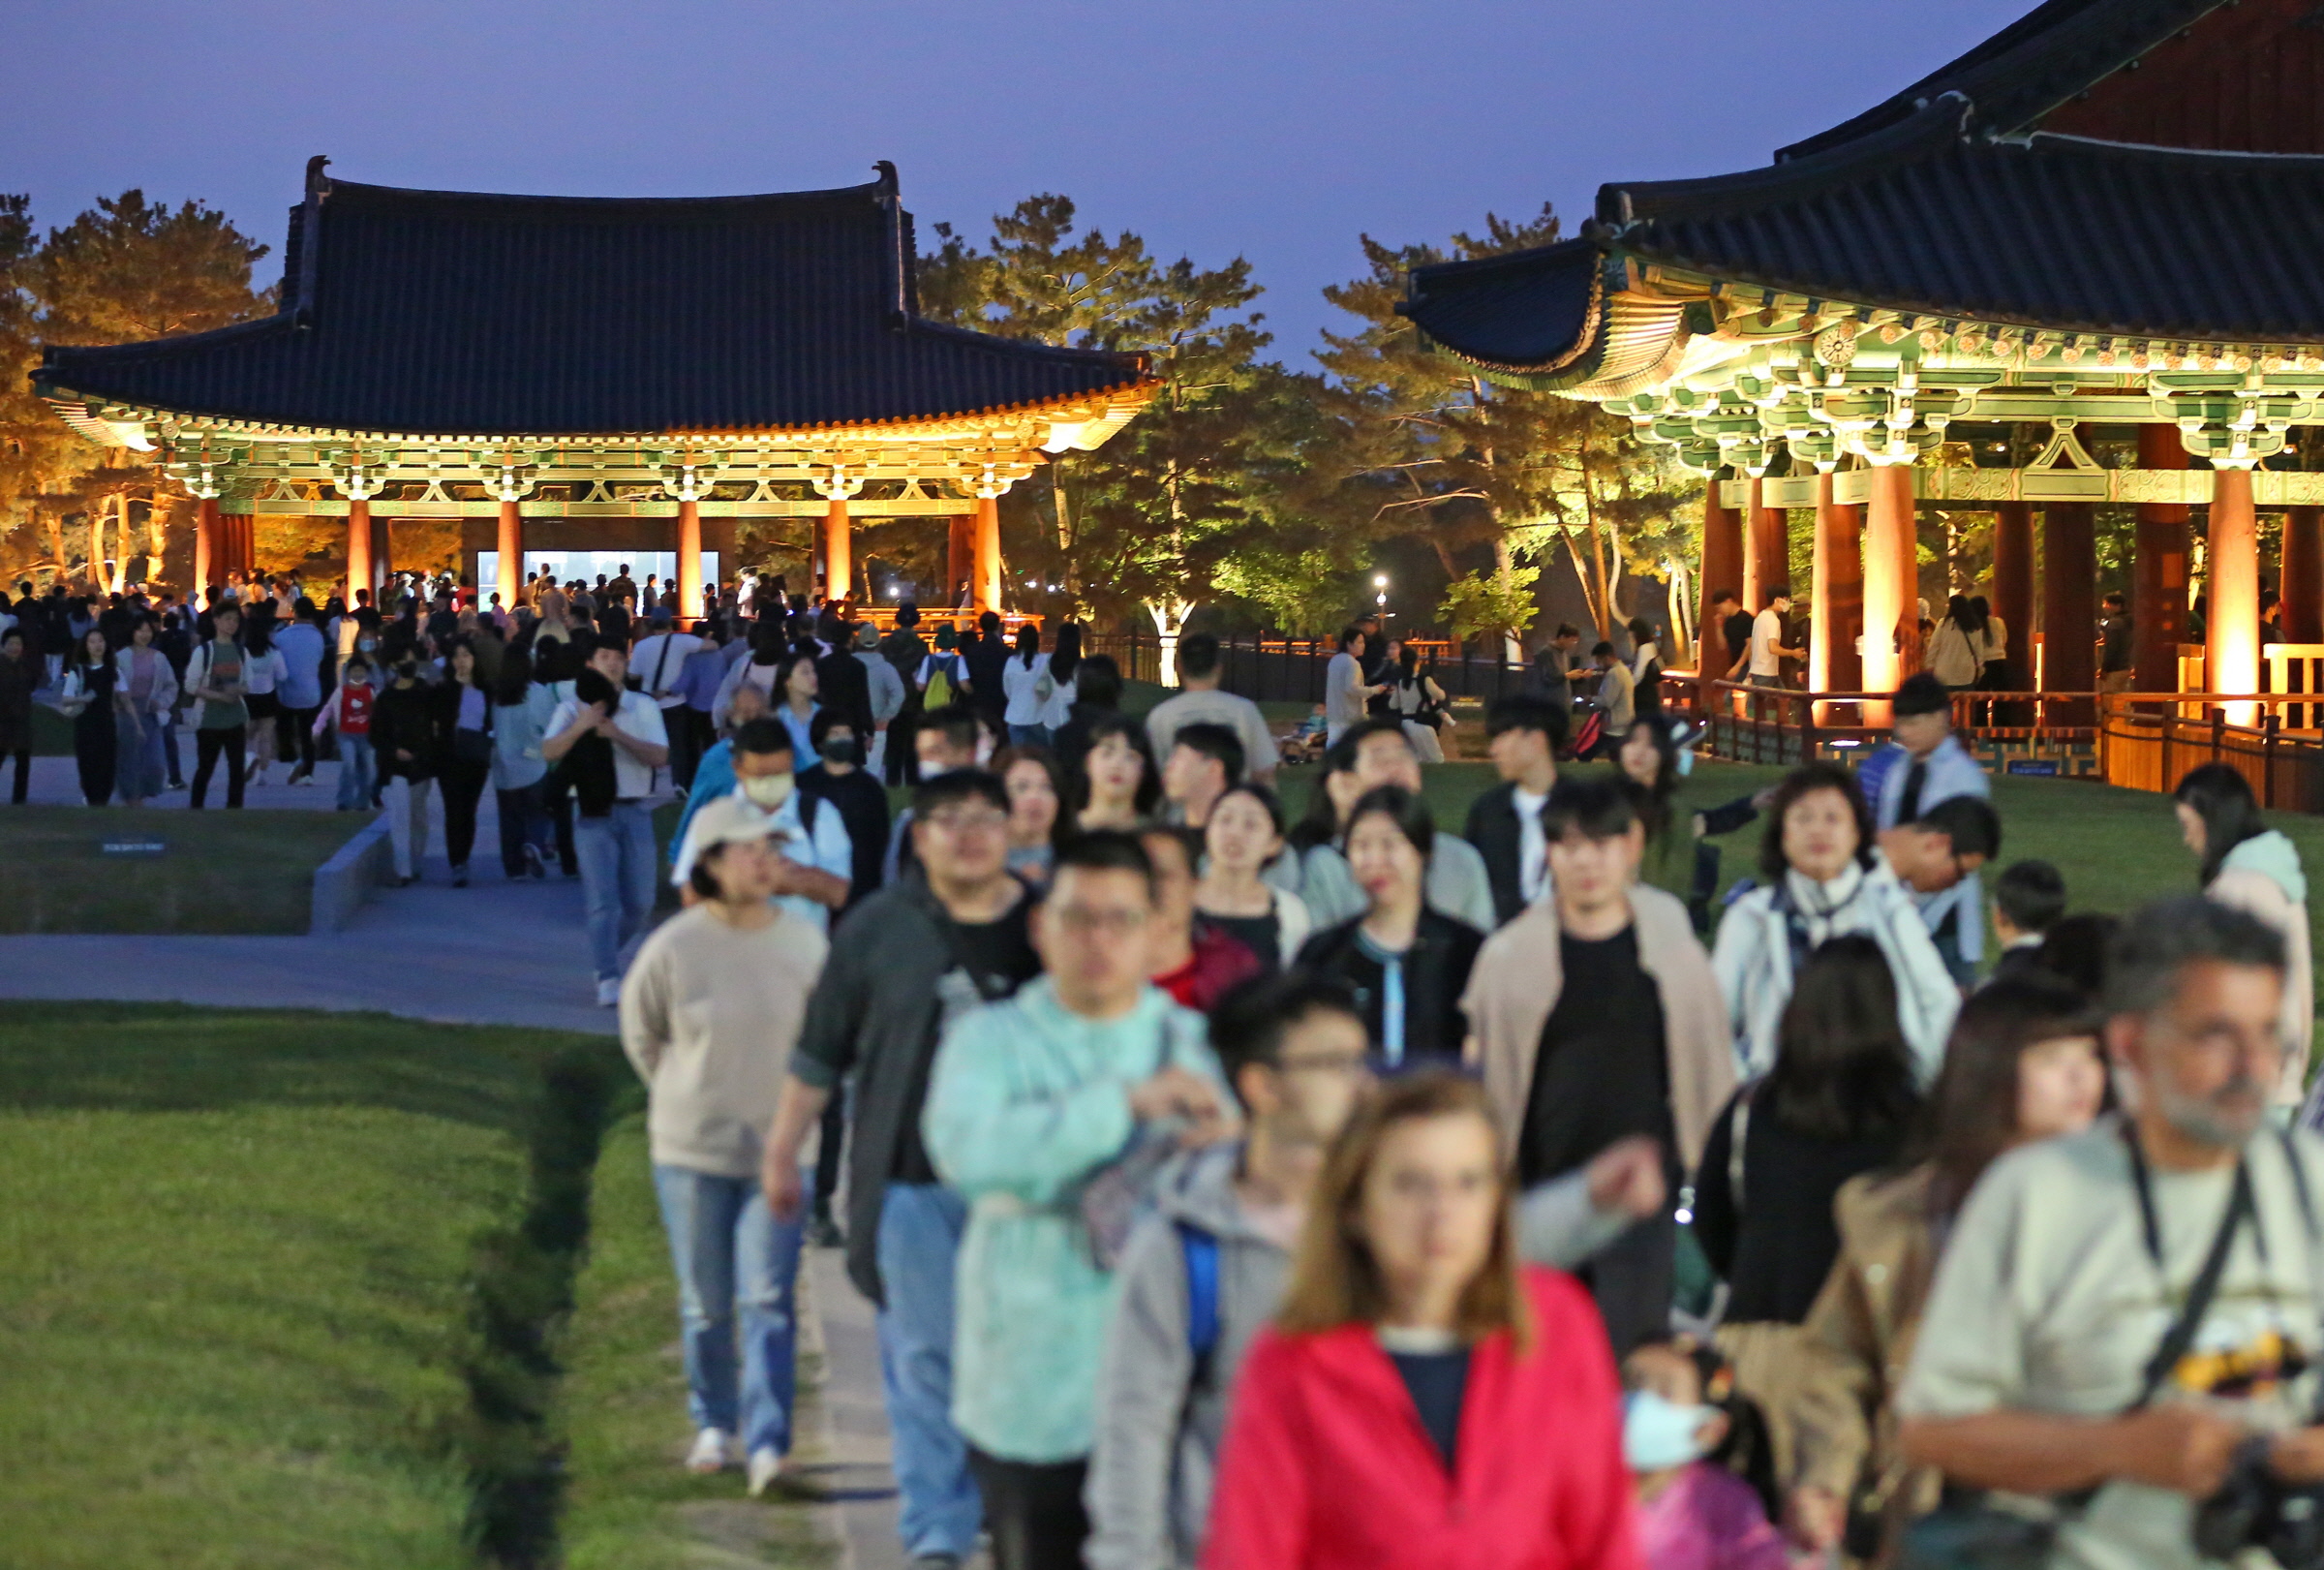 한국관광공사의 한국관광 데이터랩을 분석한 결과, 올해 1월부터 9월까지 경주시를 다녀간 외부 방문객 수가 3592만 9463명으로 집계됐다.